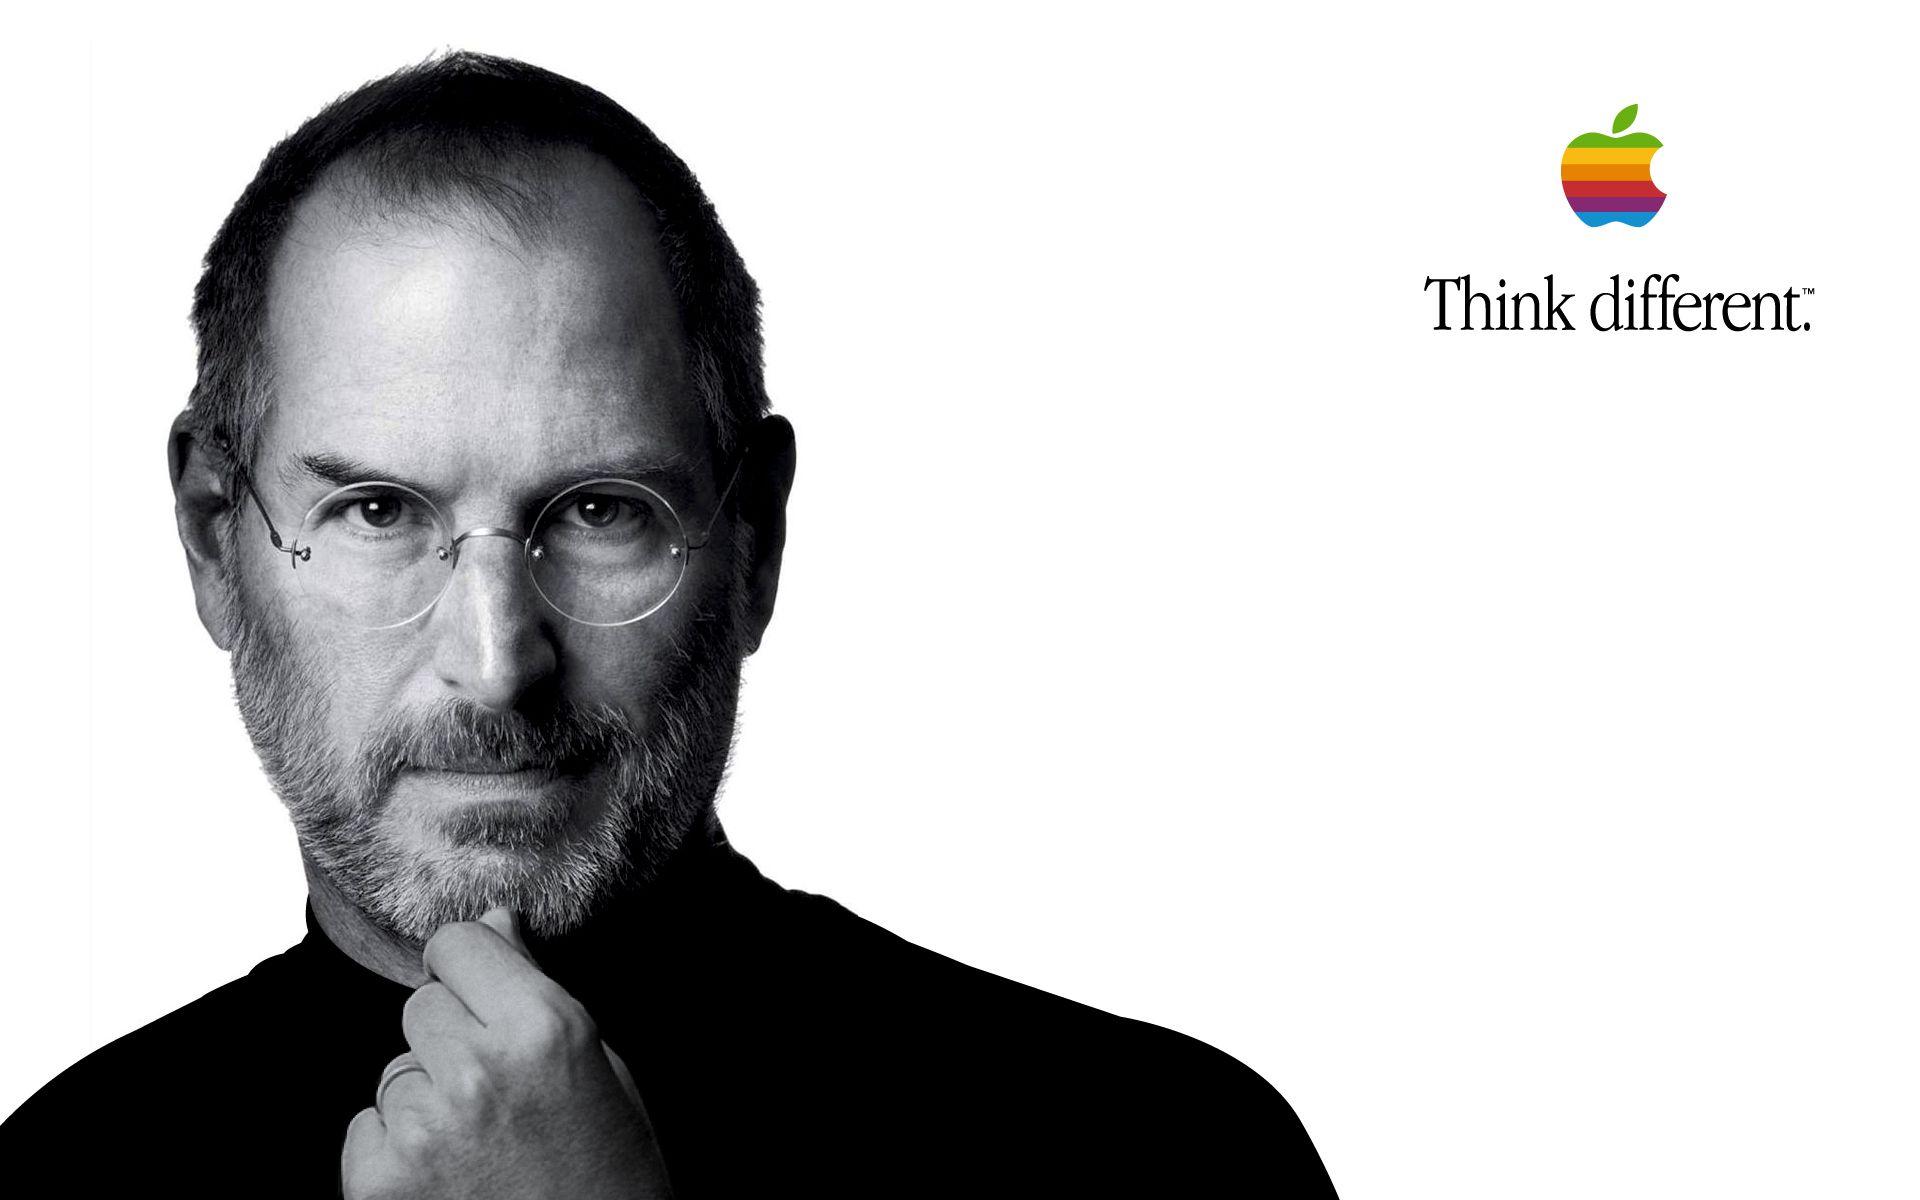 Steve Jobs Different by chrisdata HD Wallpaper. Steve jobs, Steve jobs quotes inspiration, Job poster